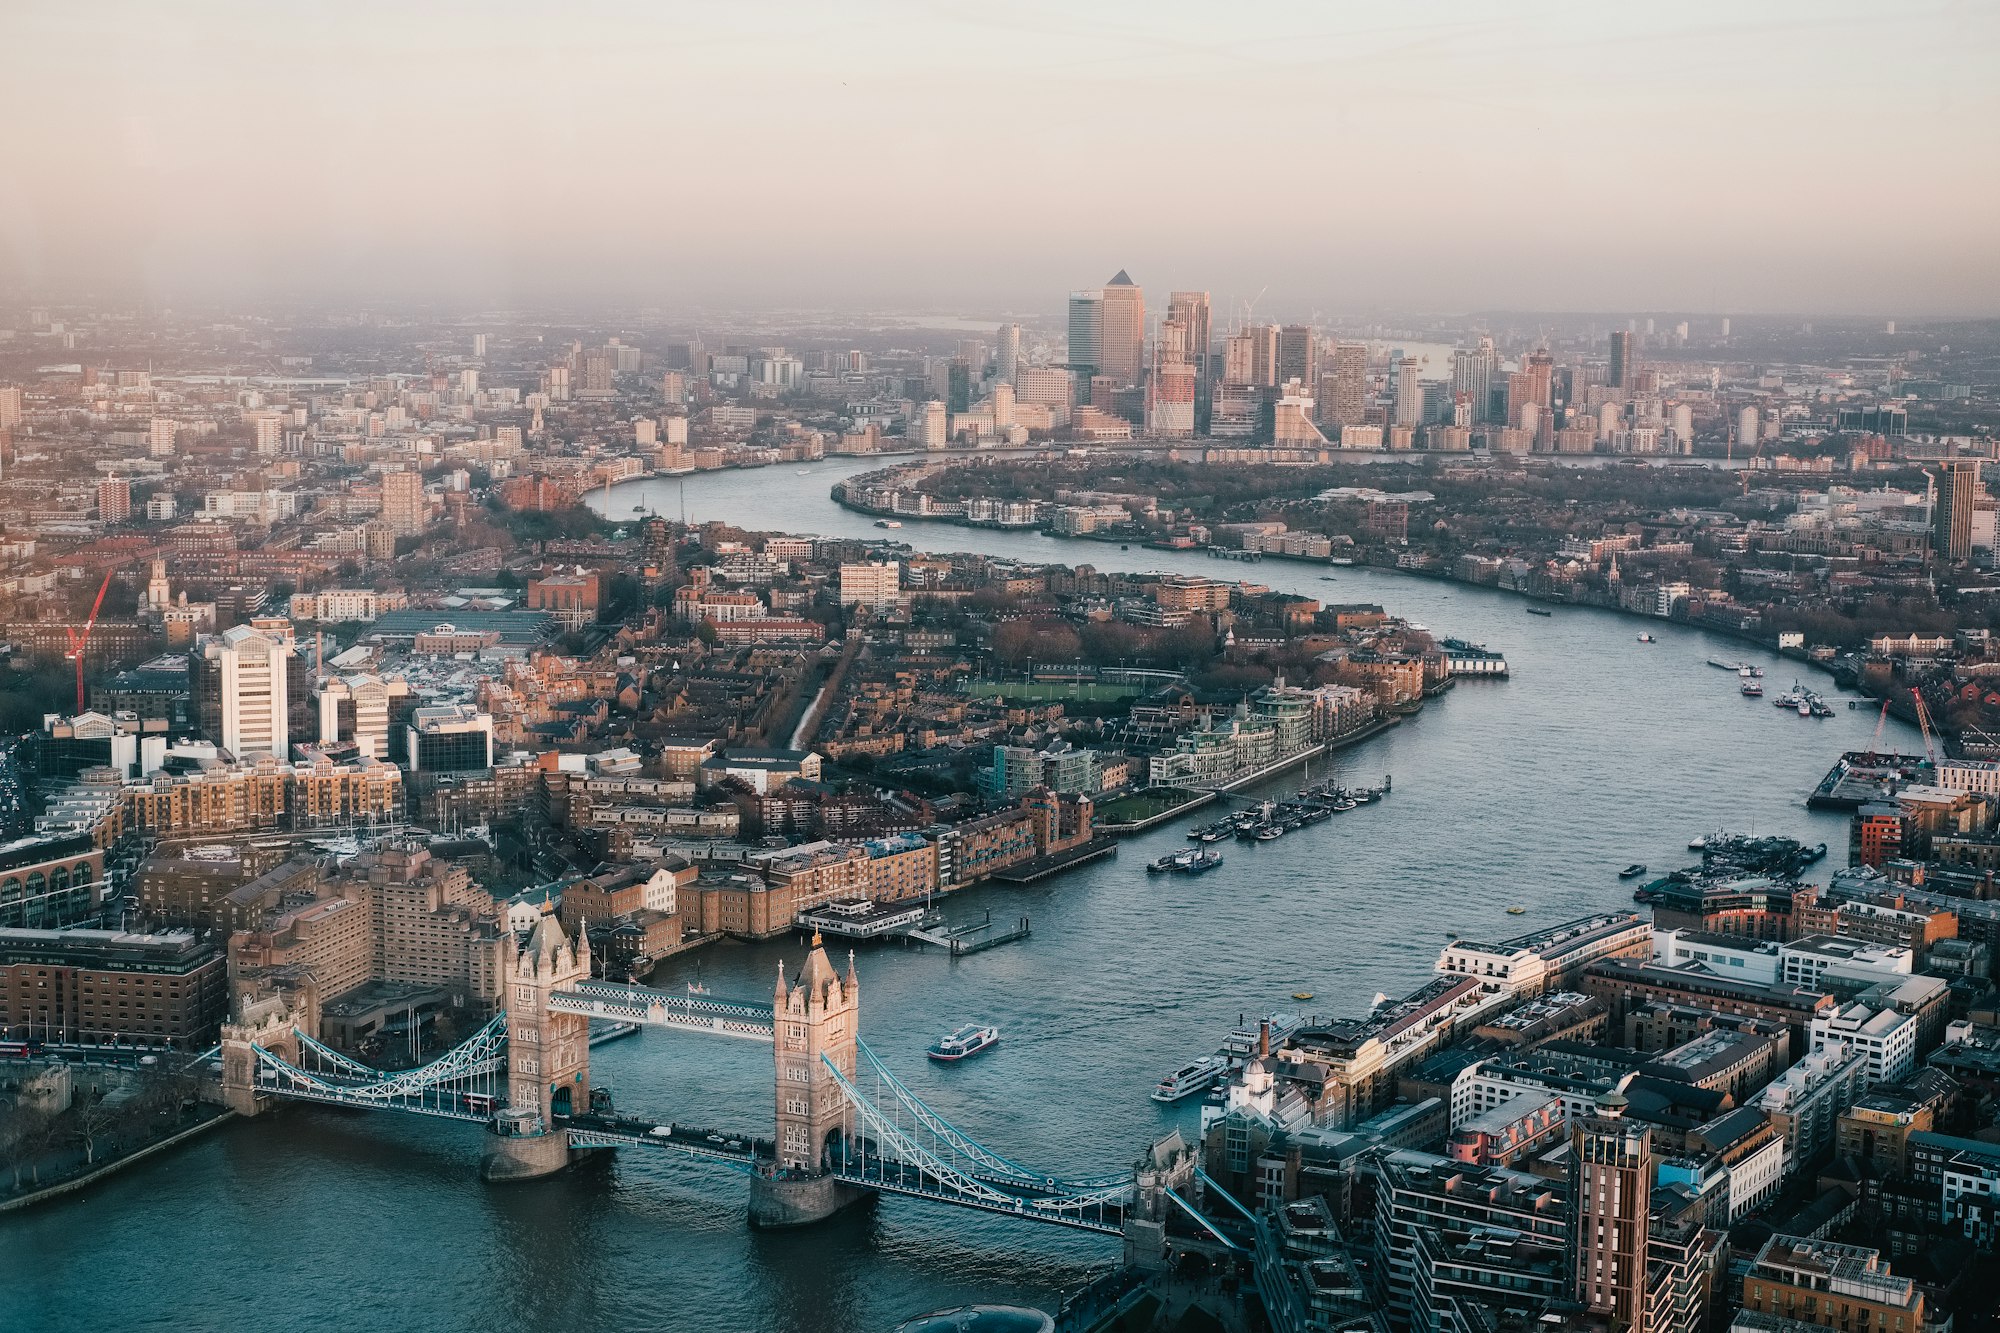 कारोबारी केंद्र के रूप में शीर्ष पर लंदन, पर अभी बहुत कुछ करना बाकी है